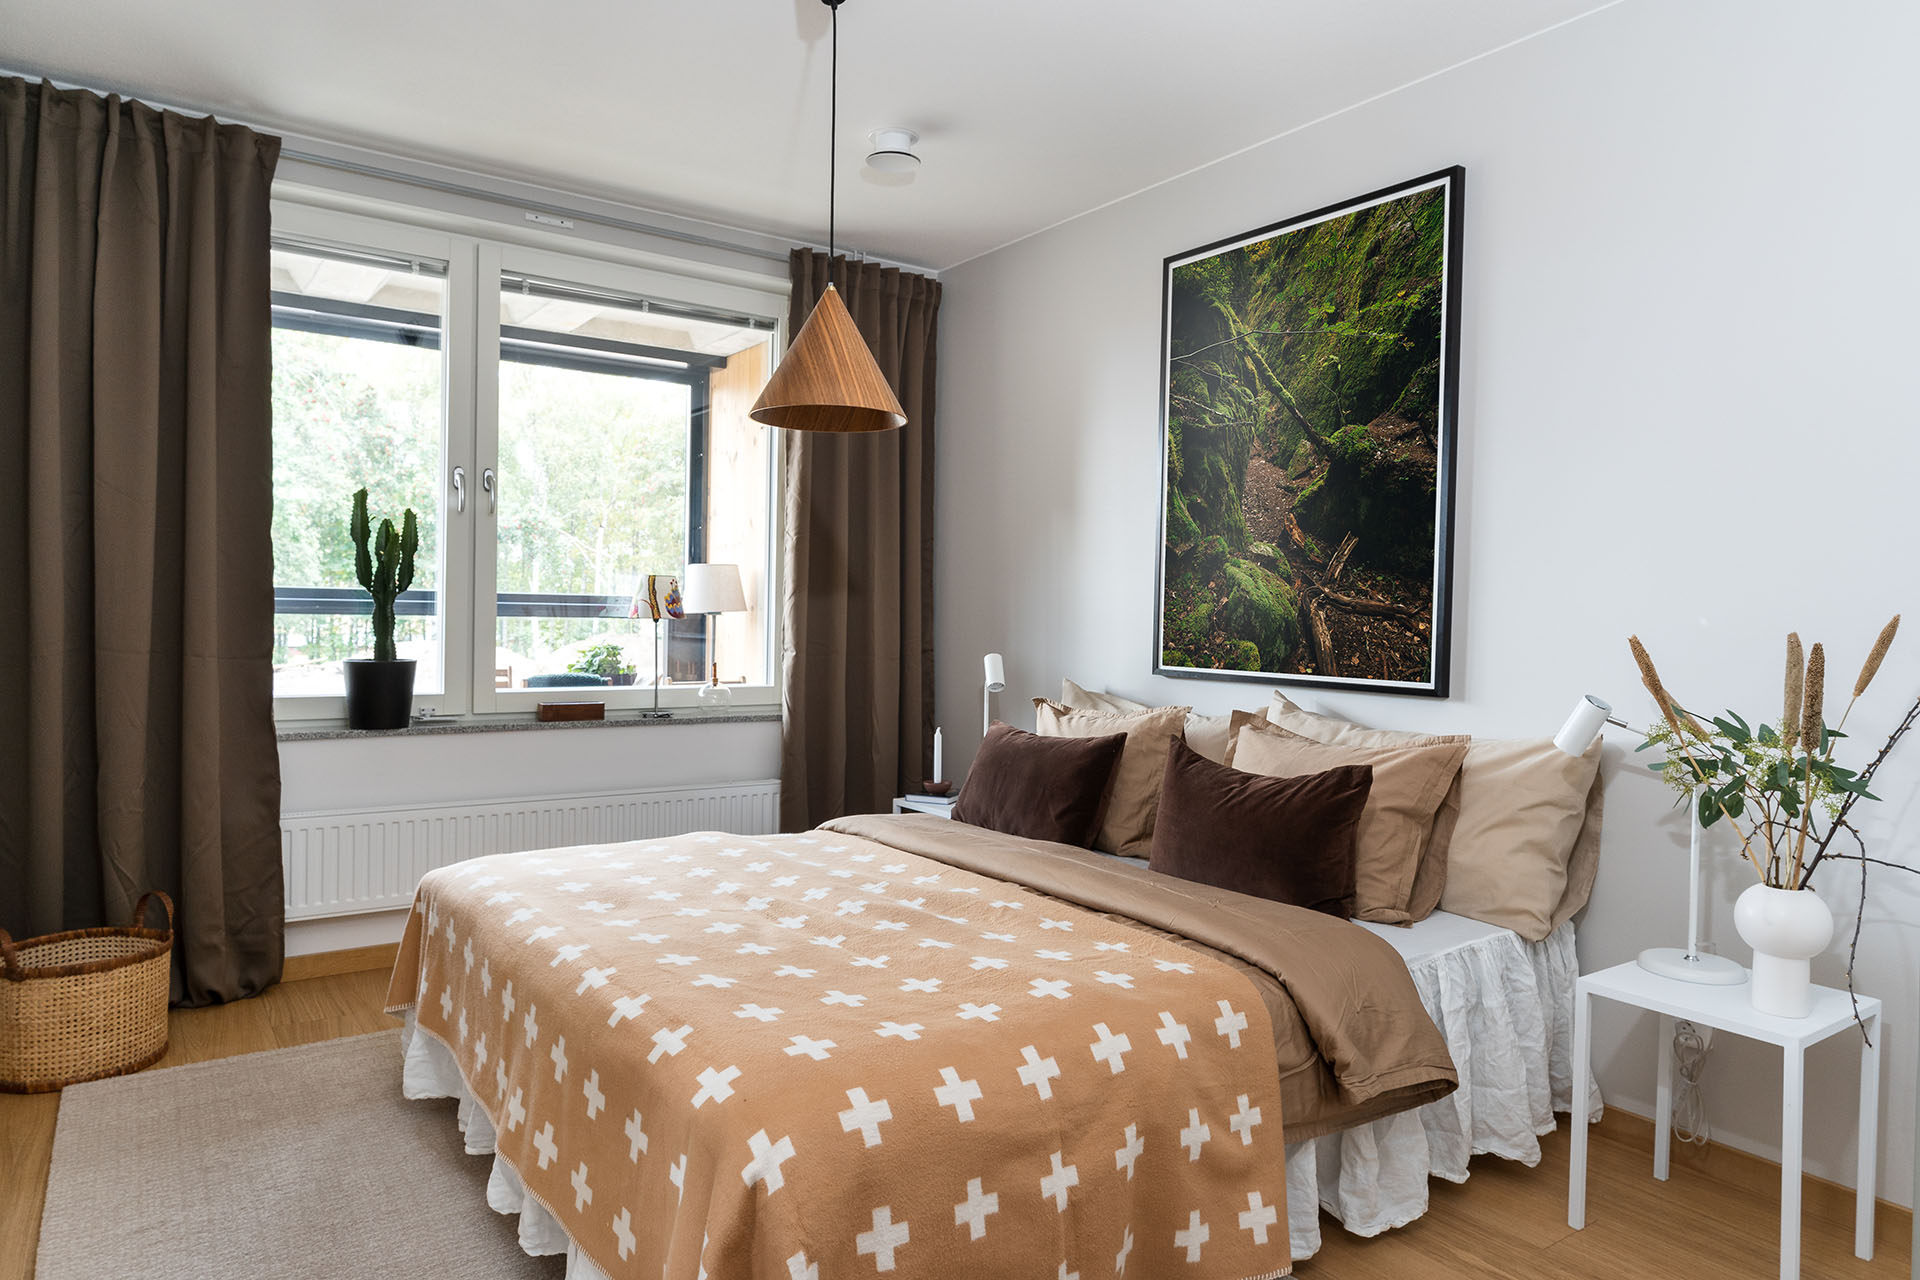 Ett sovrum med en säng i mitten som har en brunt överkast med ett korsmönster. Brungröna långa gardiner i fönstret och en tavla med skogsmotiv på väggen.